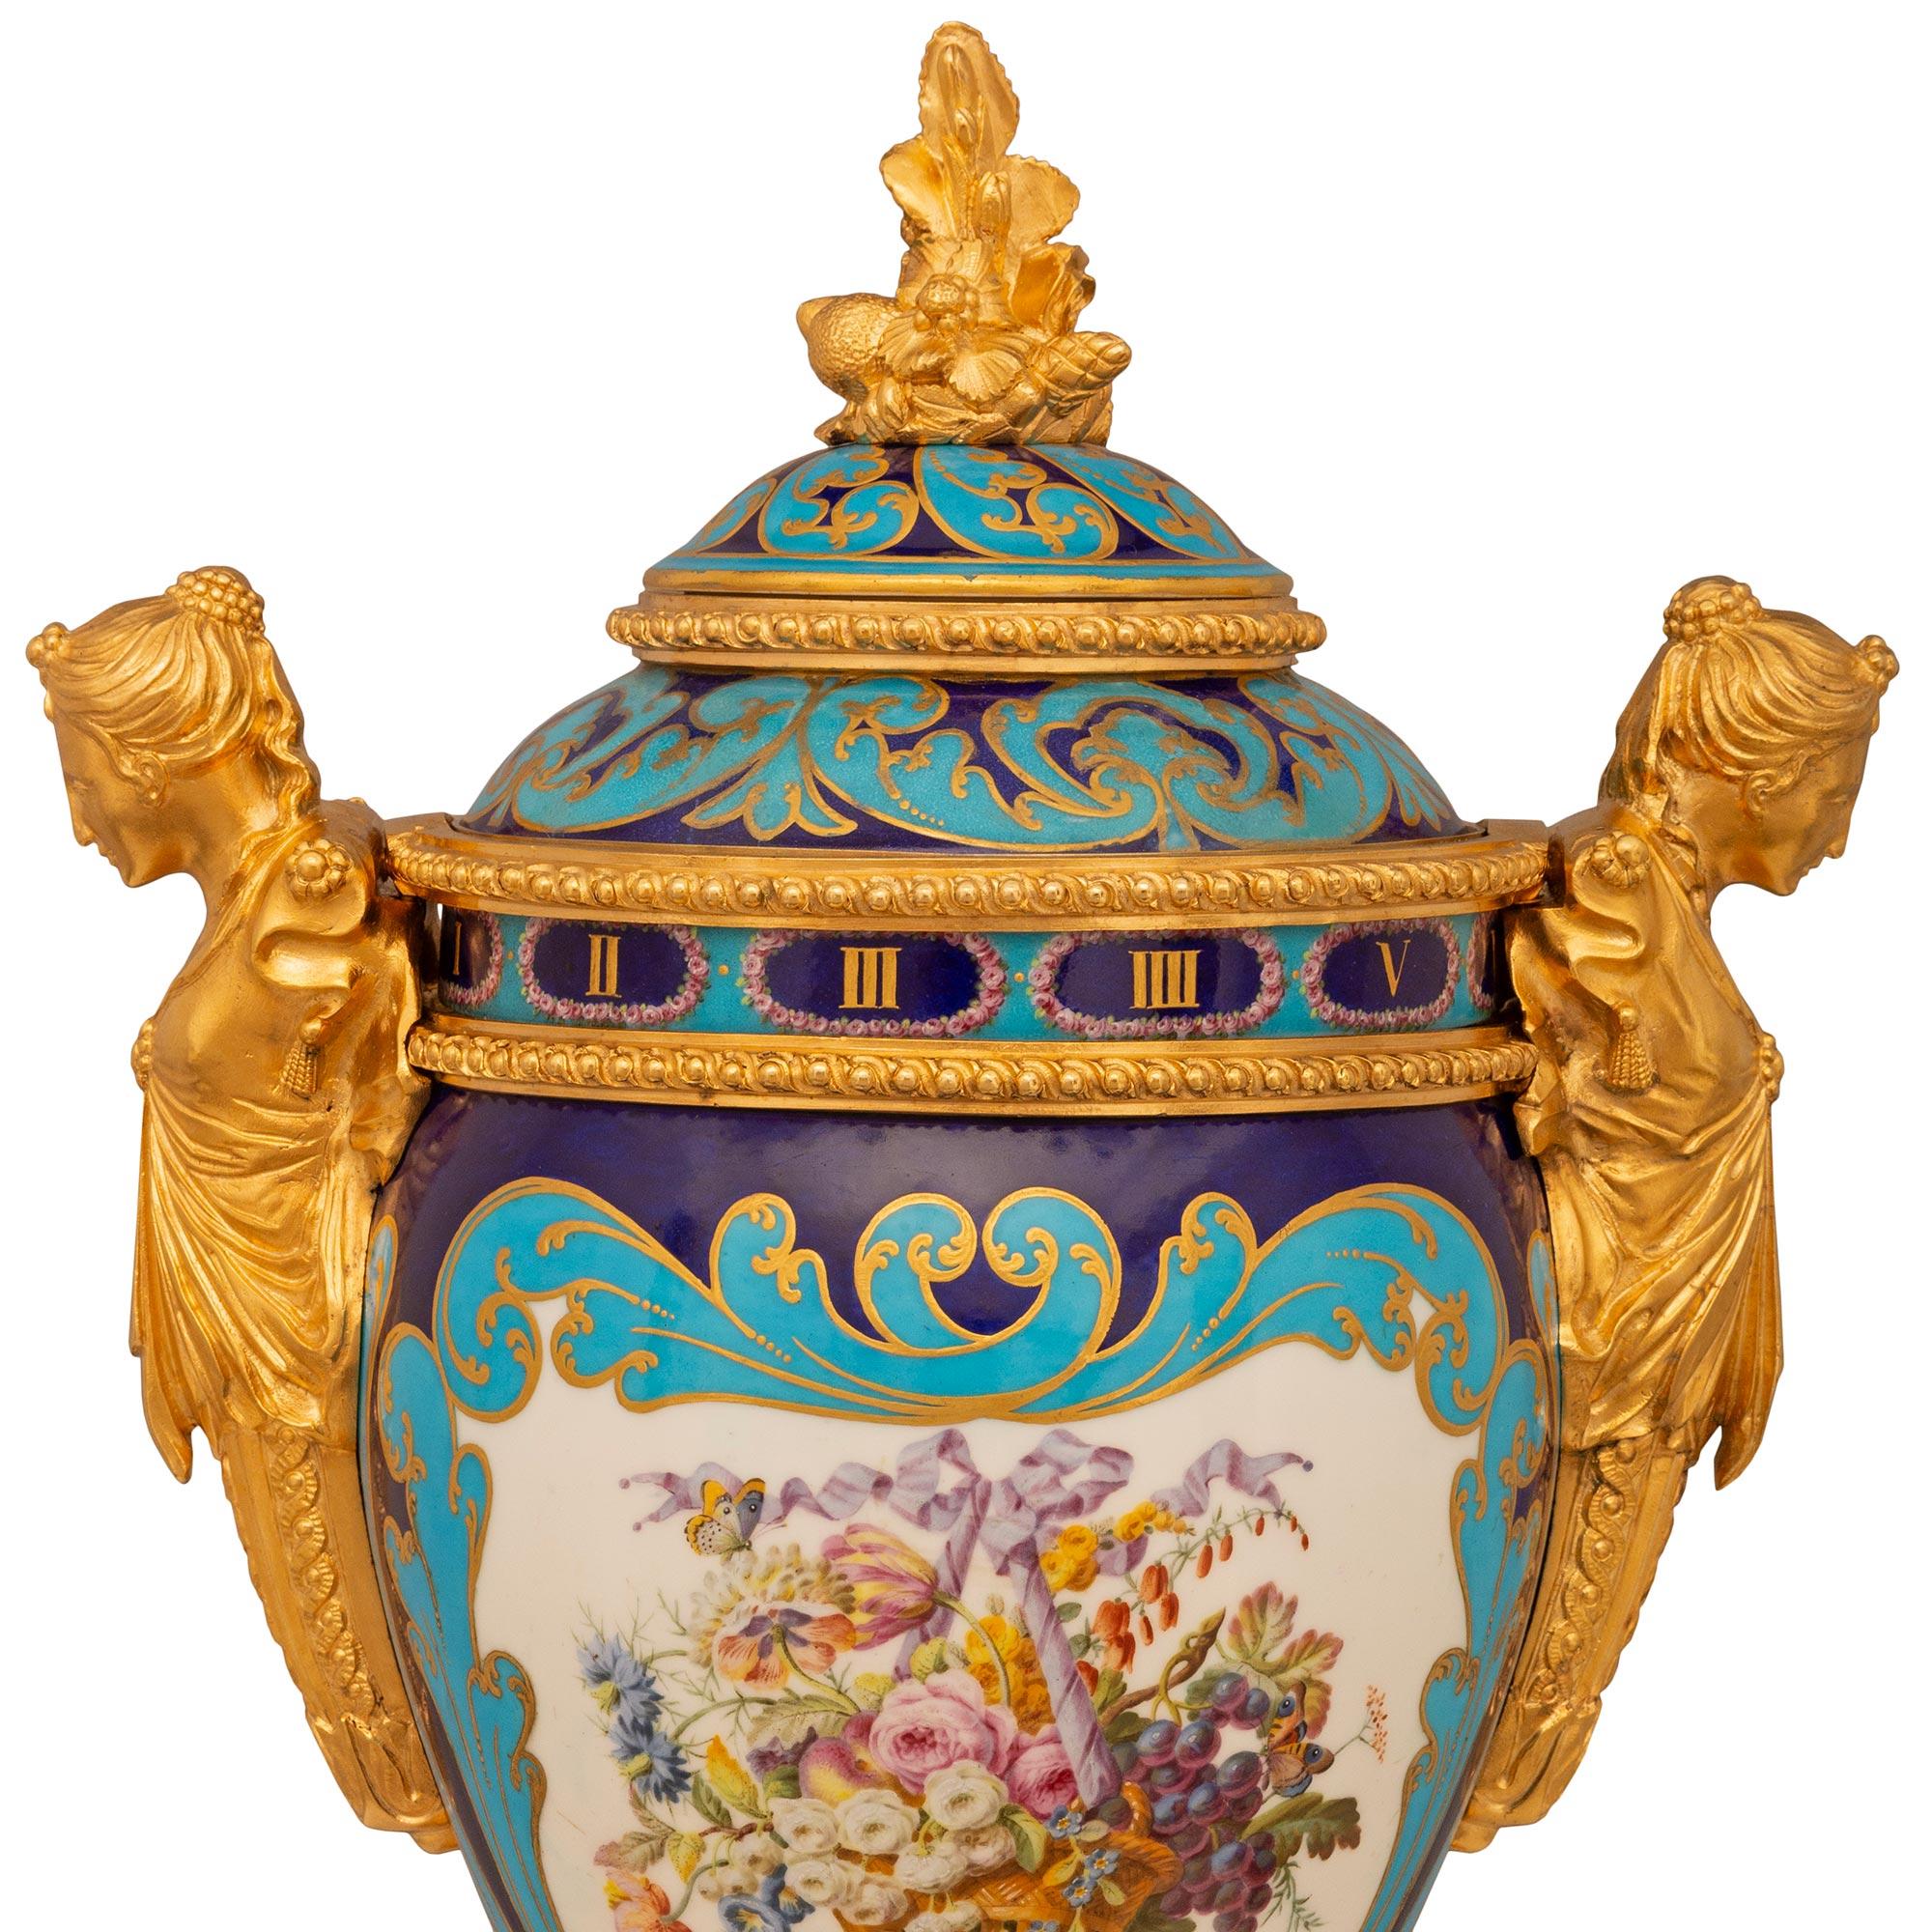 Une sensationnelle pendule annulaire en porcelaine de Sèvres et bronze d'orfèvrerie de grande qualité, datant du 19e siècle. La pendule est surmontée d'une base carrée en bronze doré avec une bordure en Cœur de Rai au-dessus de supports en forme de